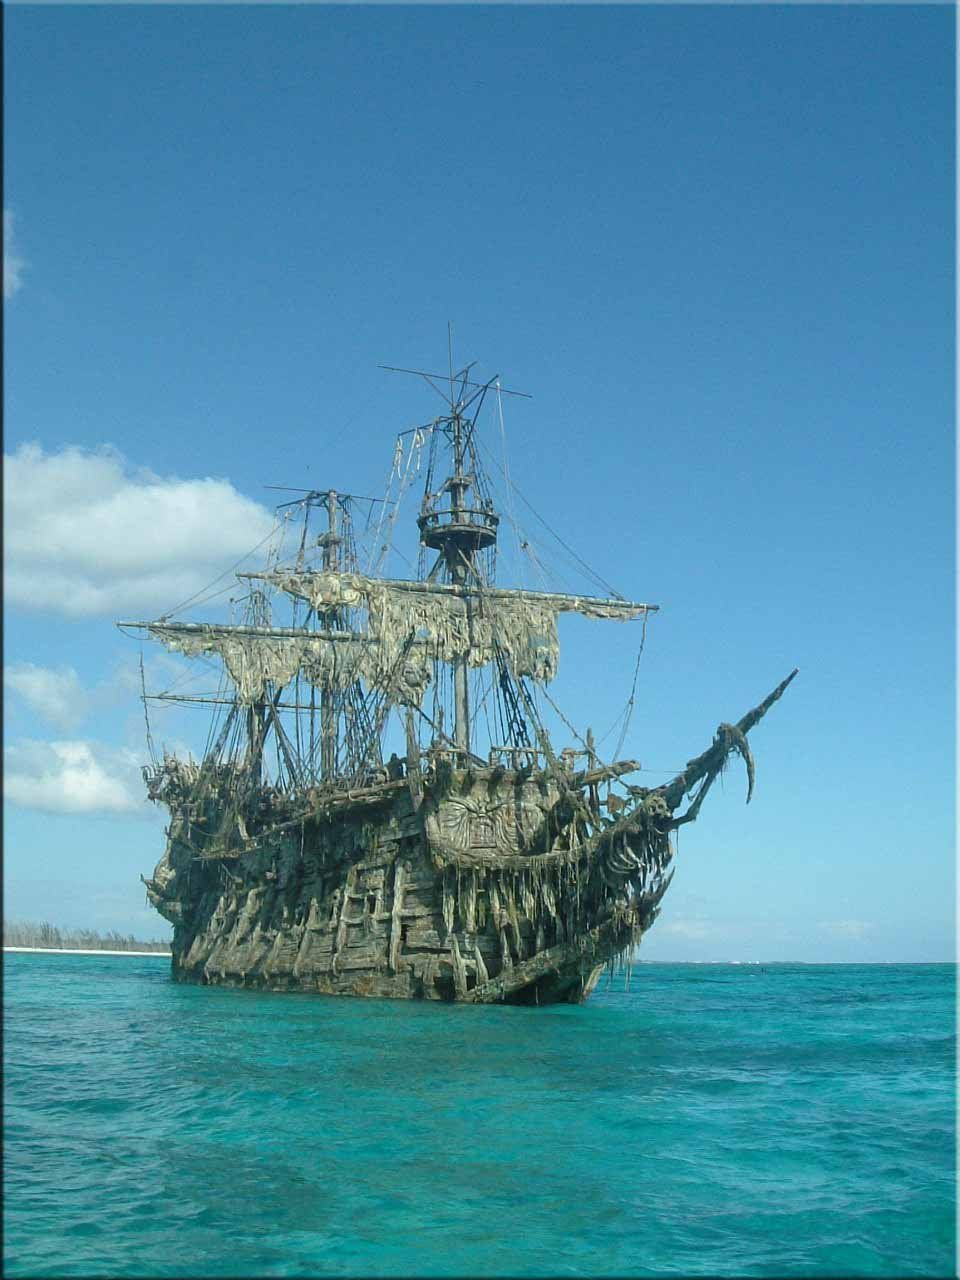 пираты карибского моря все корабли названия